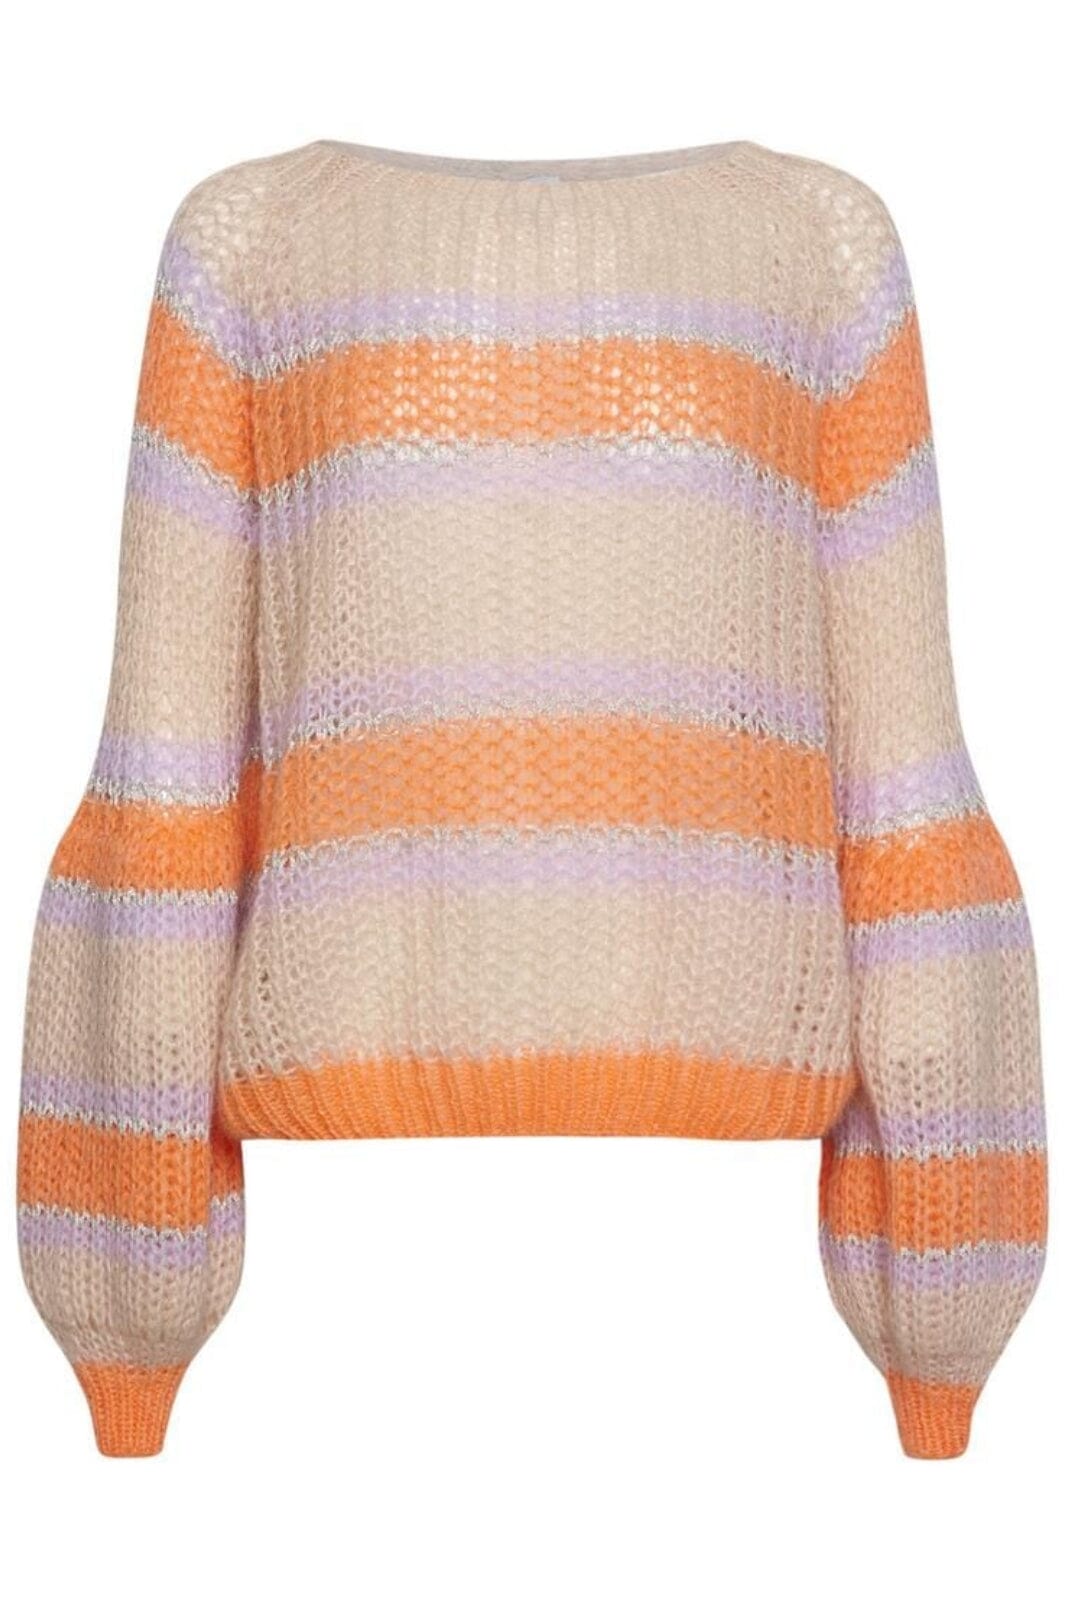 Noella - Pacific Knit Sweater - Apricot/Lavender Mix Strikbluser 